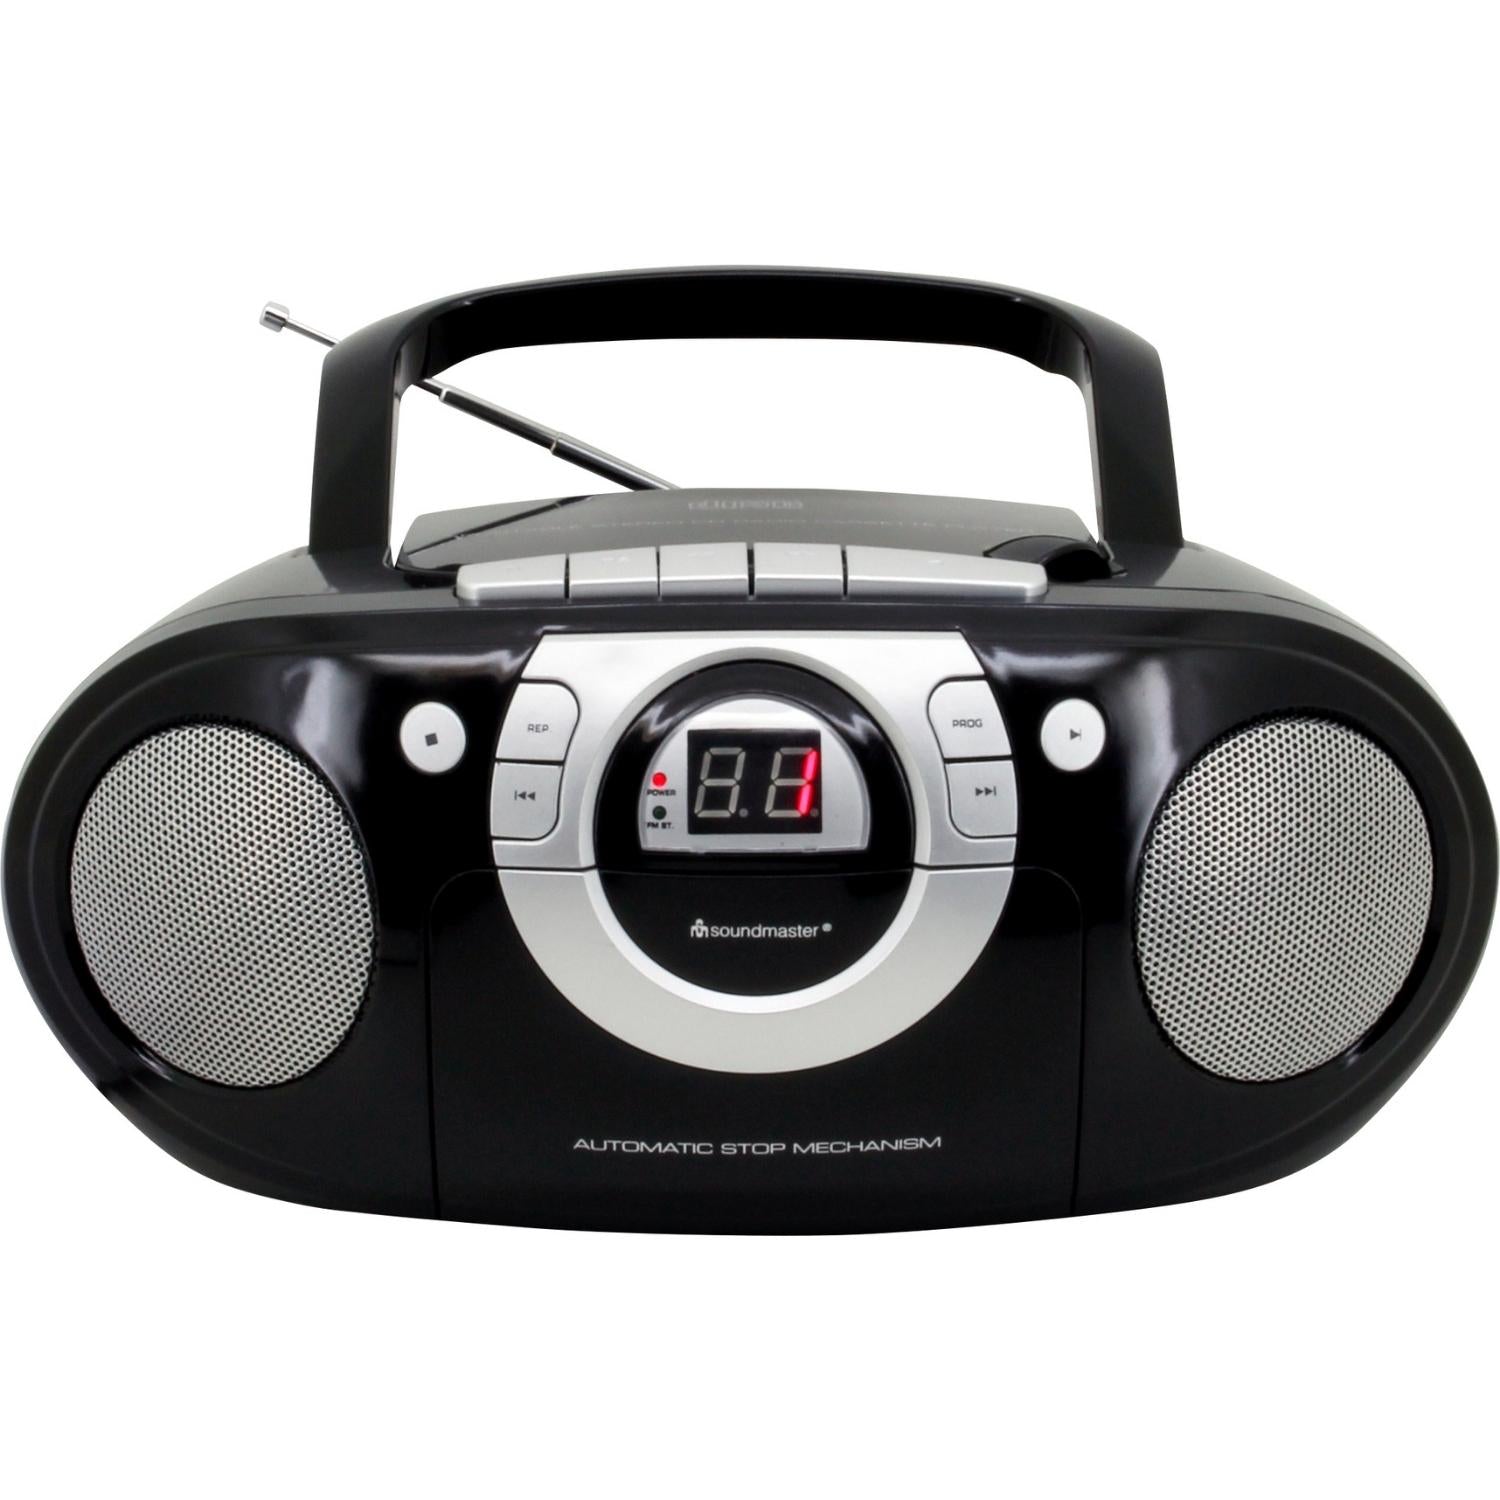 Soundmaster SCD5100SW tragbarer CD-Player Radiorecorder Kassettenrecorder AUX-Anschluss